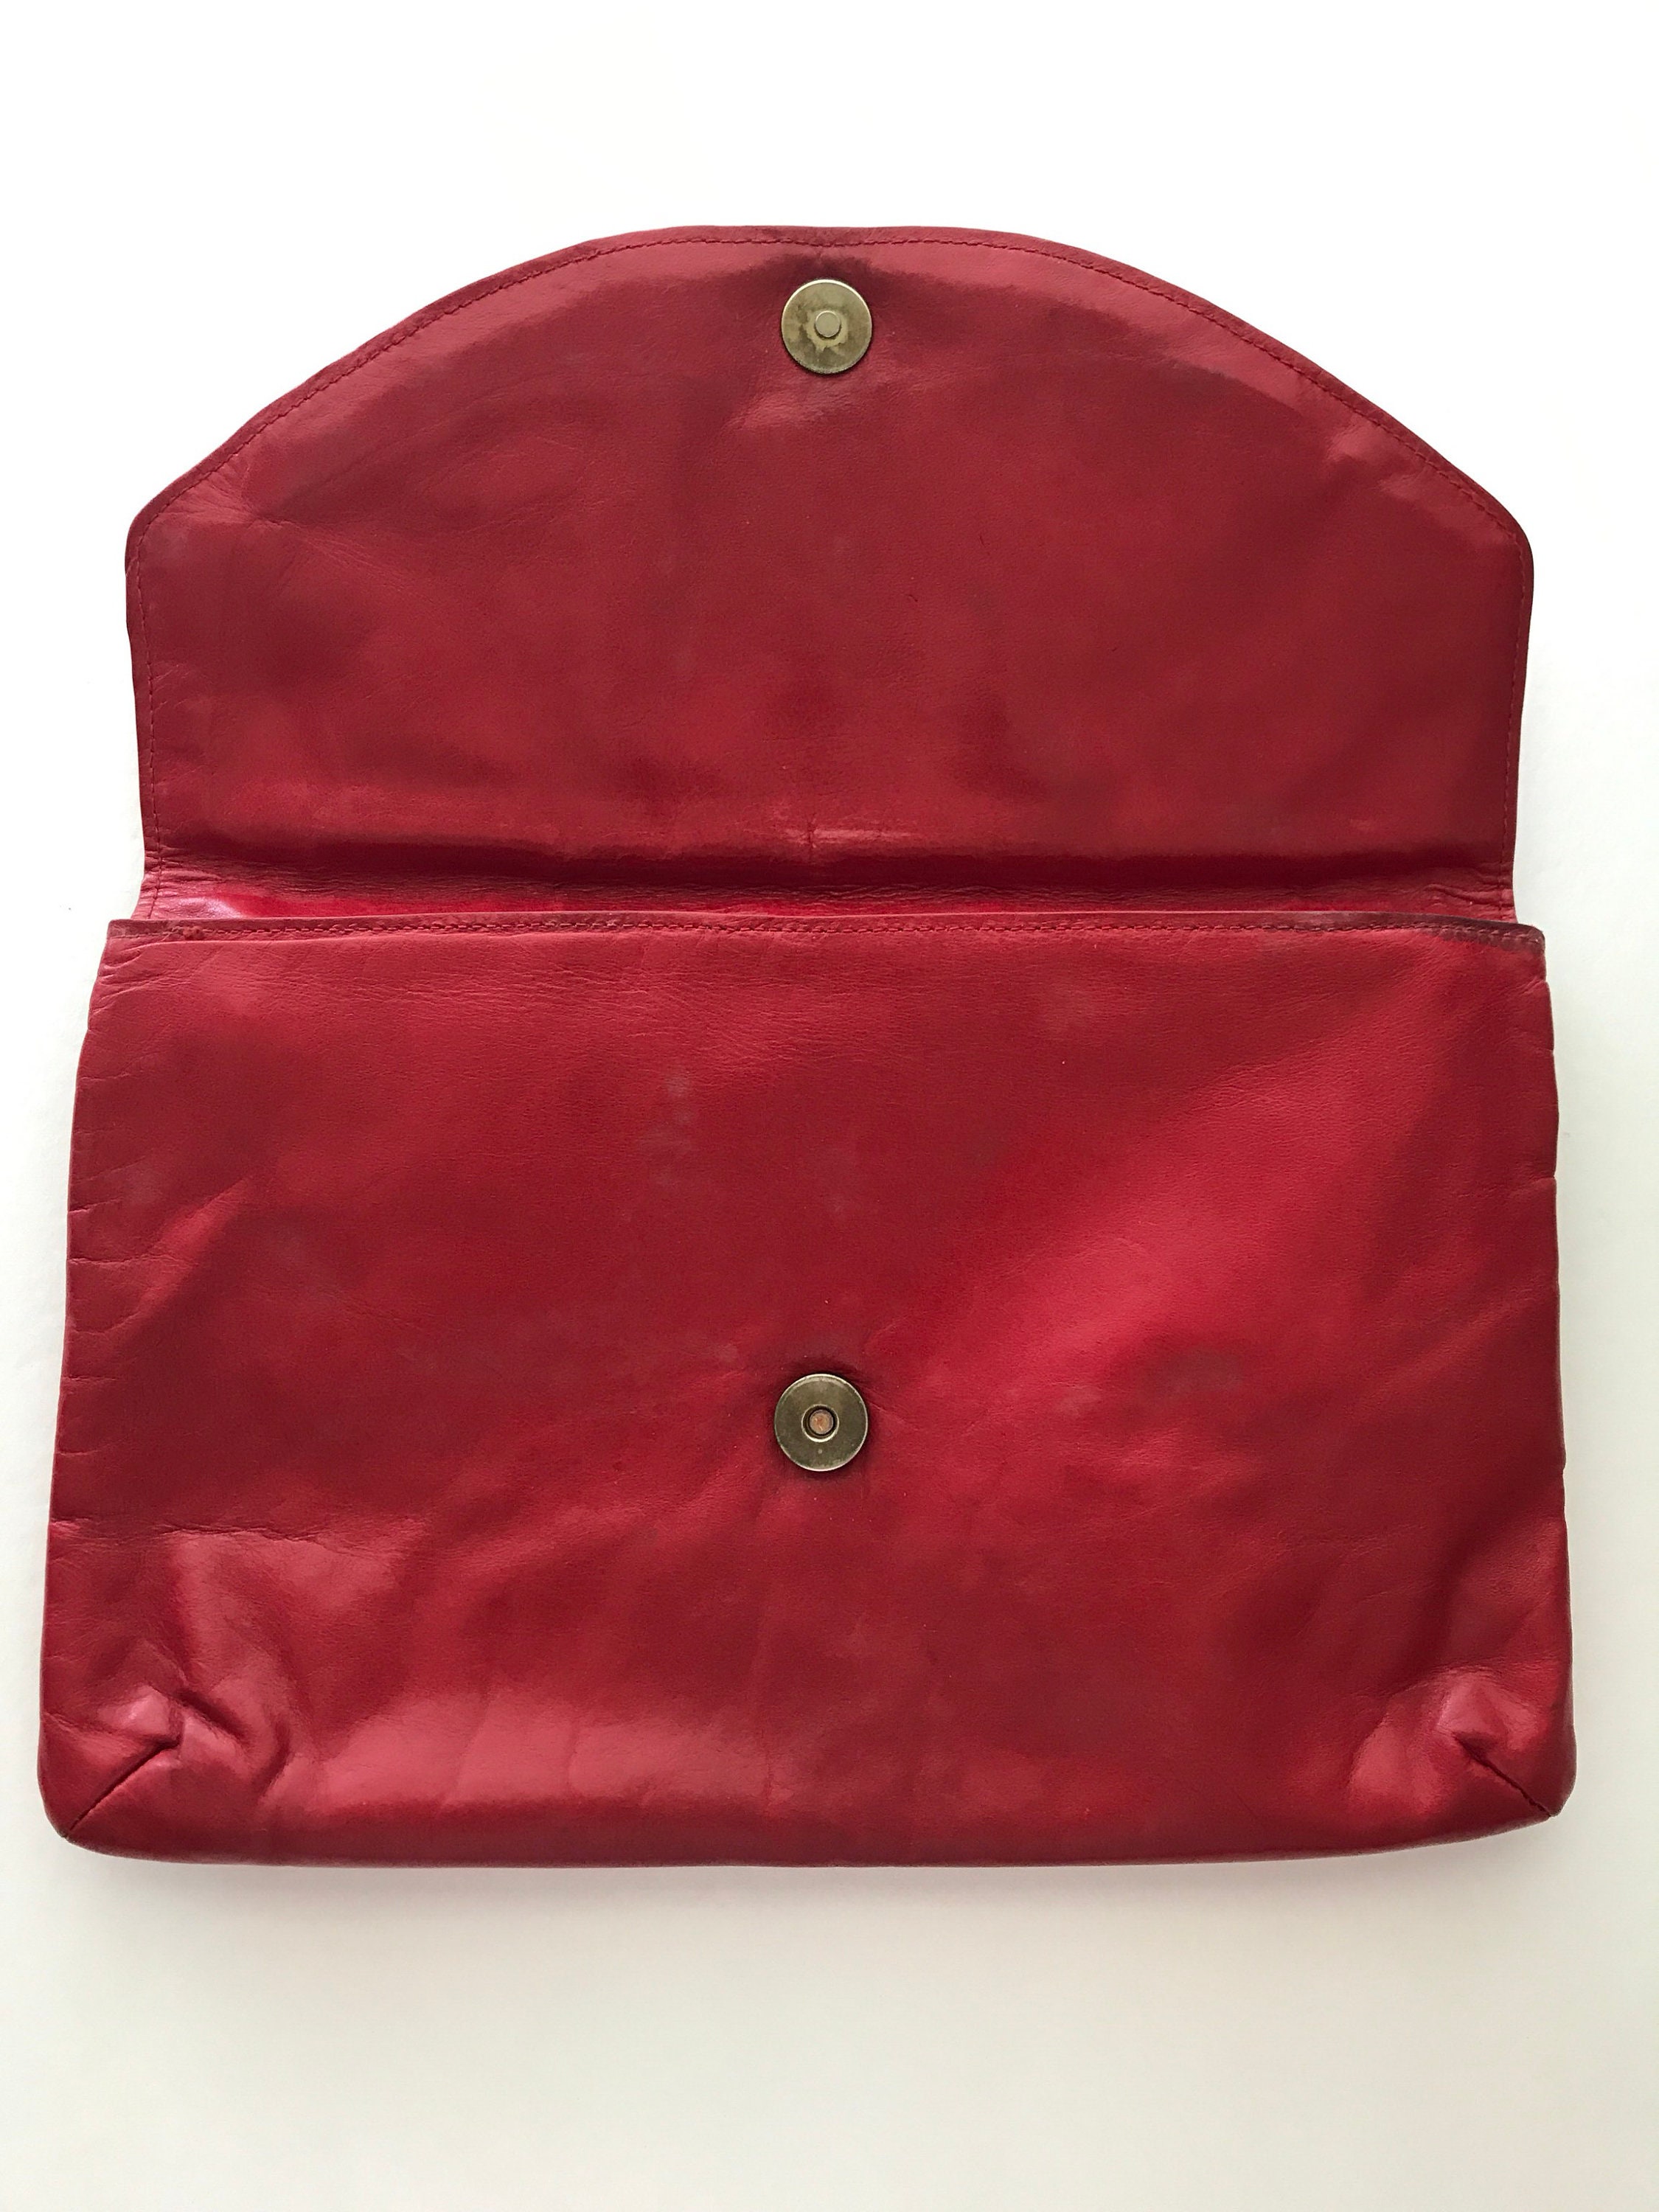 Lorenzo France Red Leather Handbag - Etsy UK